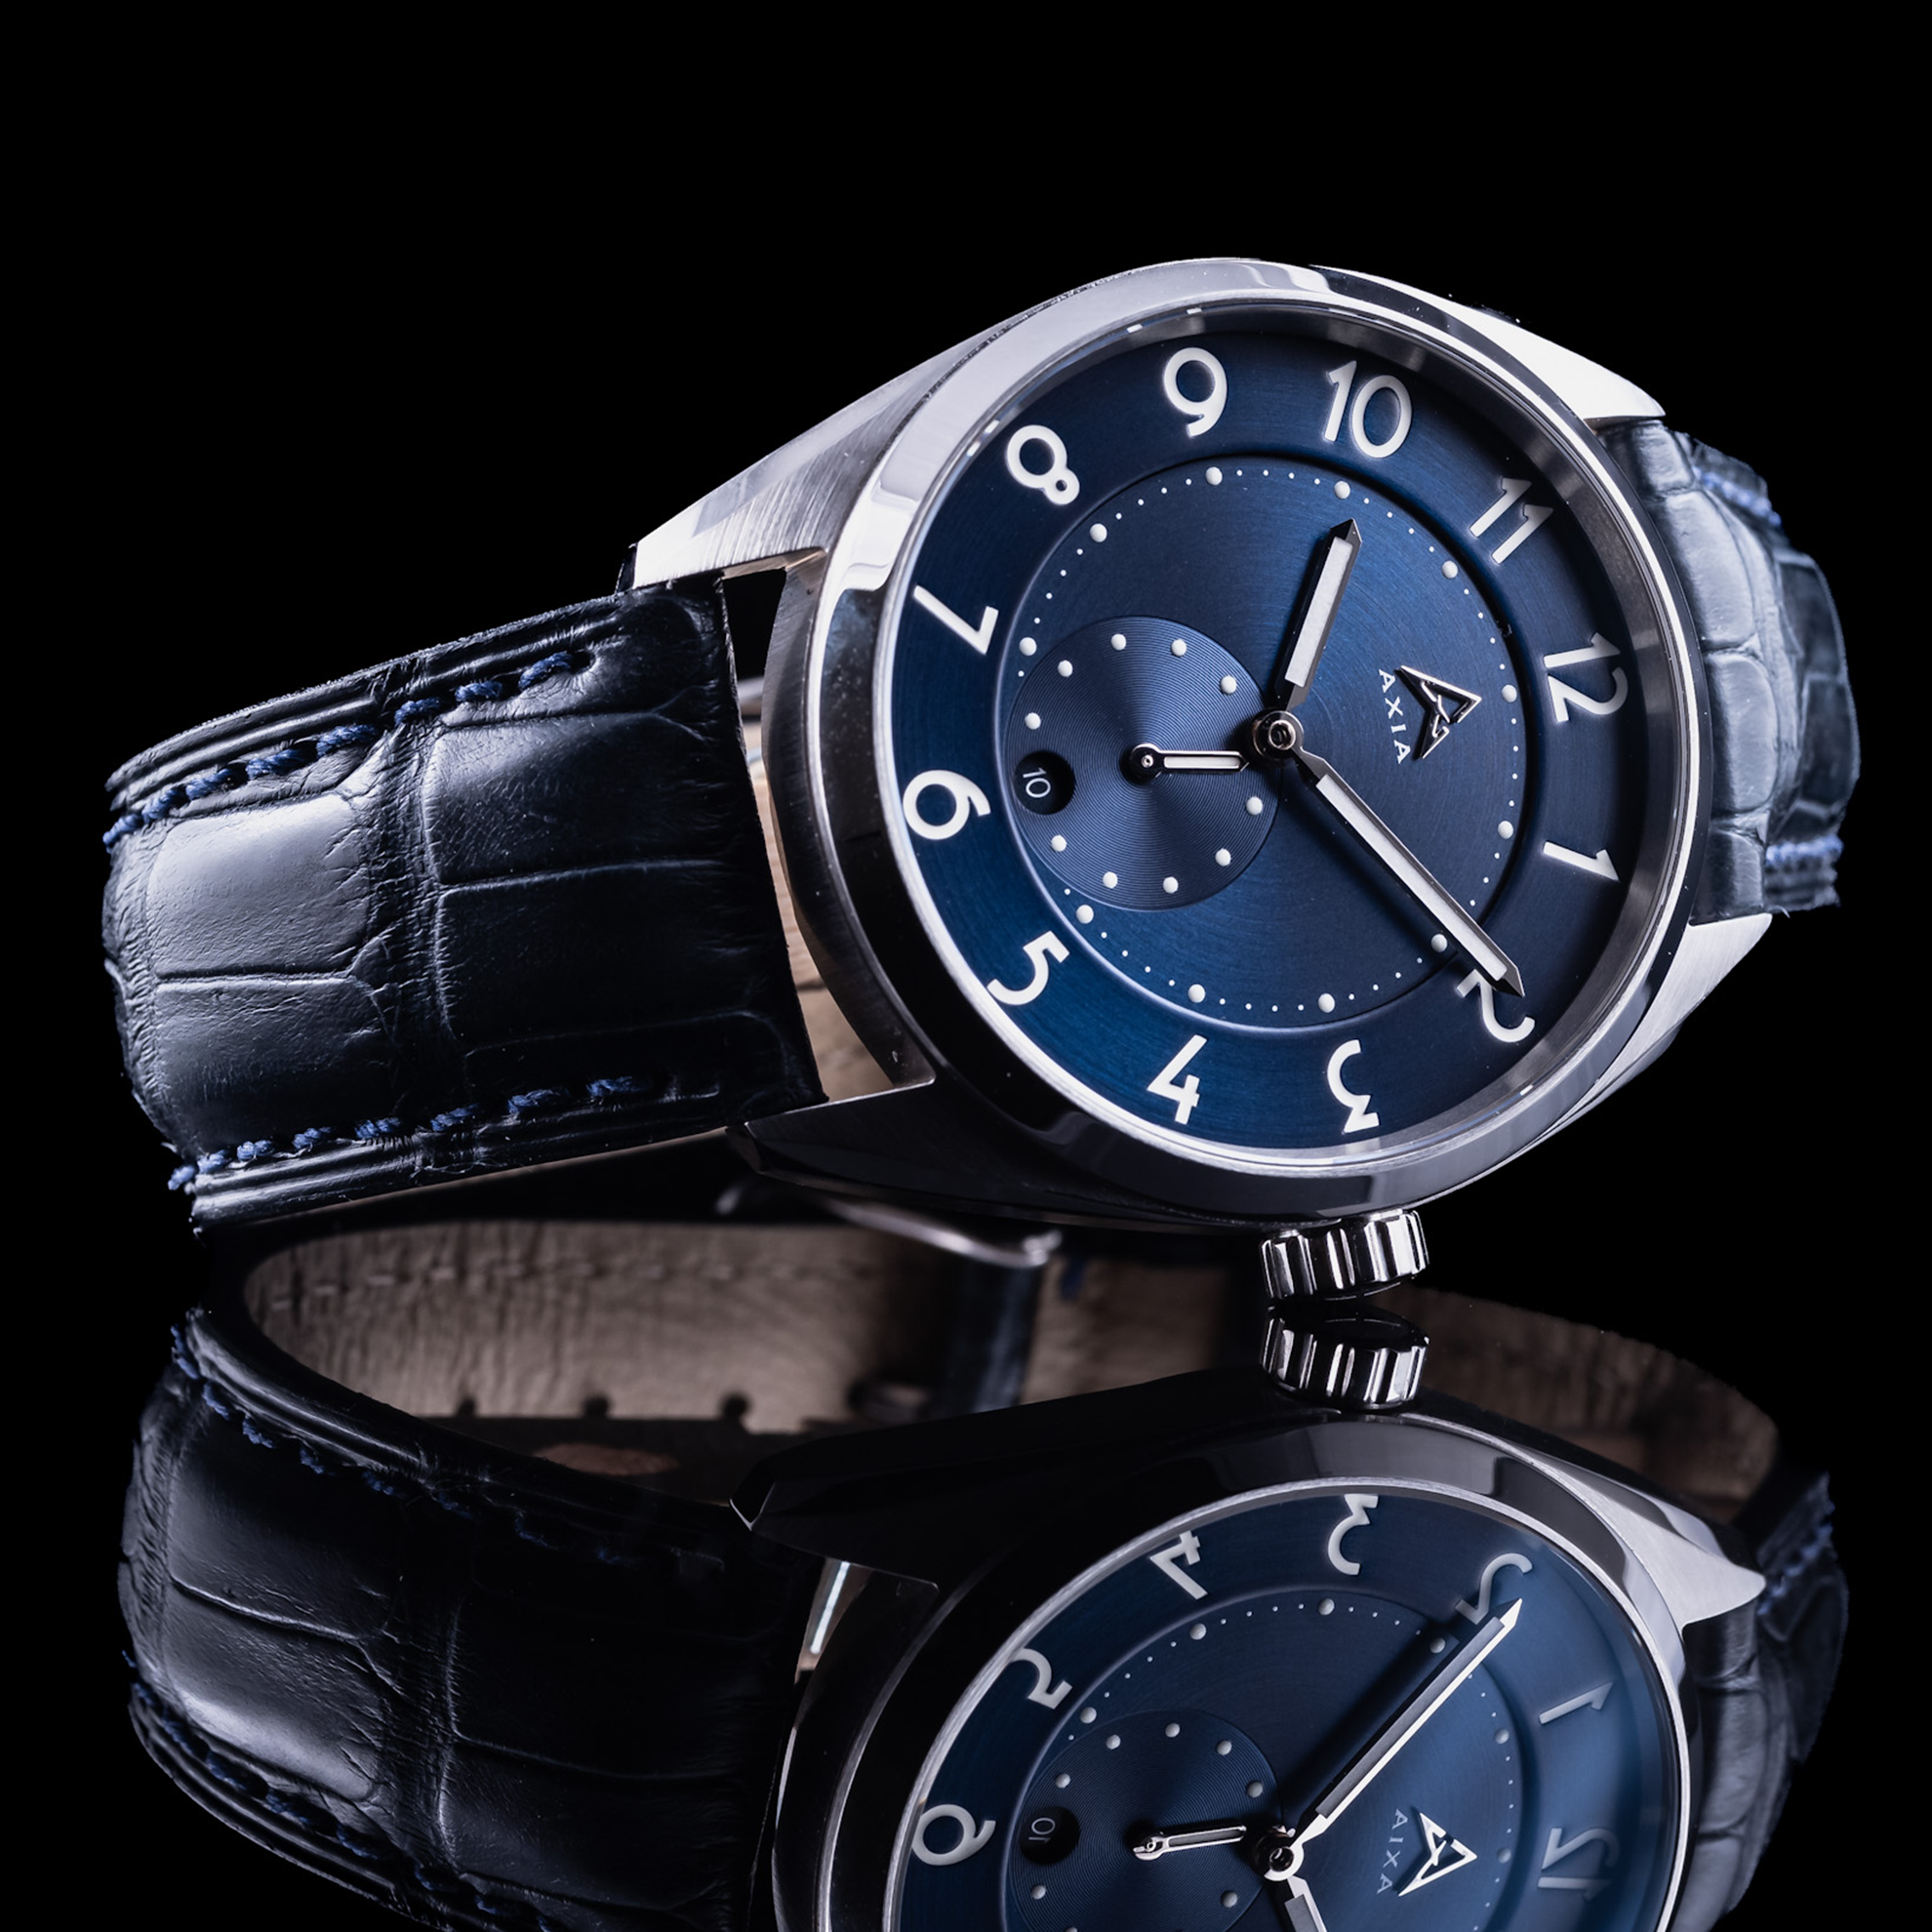 AXIA Time Sofia II swiss made automatic watch